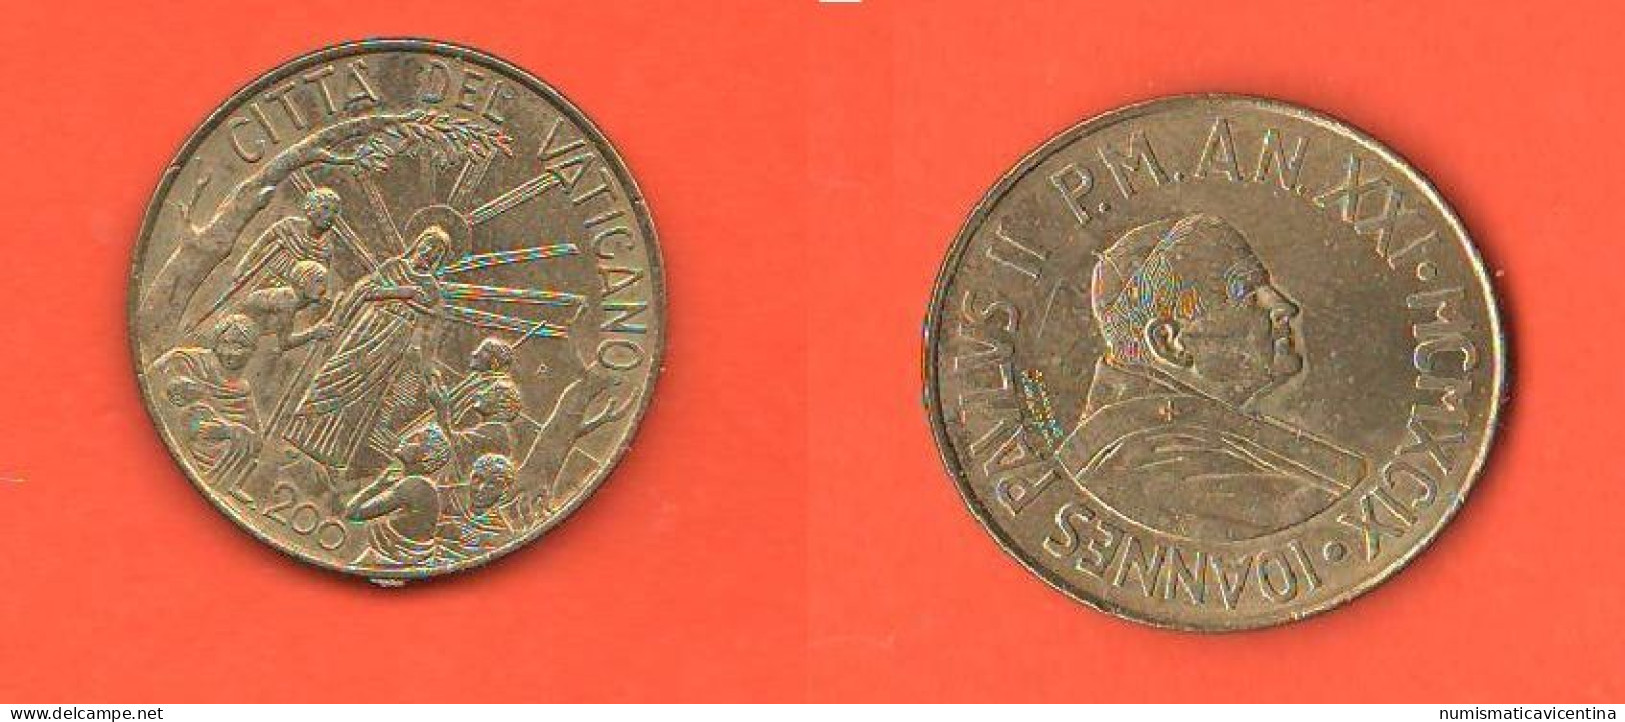 Vaticano 200 Lire 1999 Vatican City Wojtyla Bronze Coin - Vatican